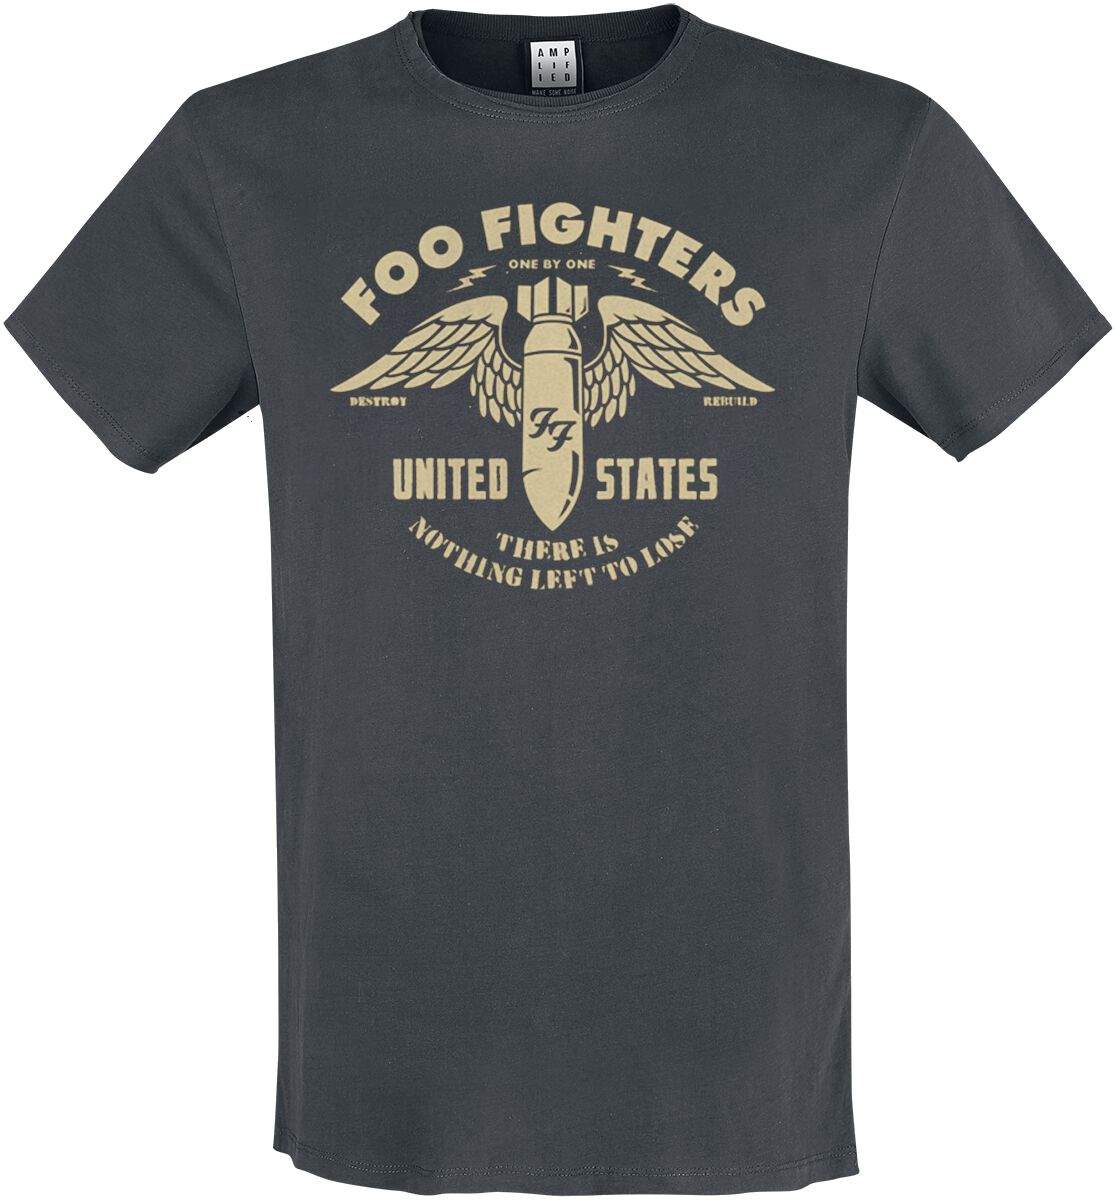 Foo Fighters T-Shirt - Amplified Collection - One By One - S bis 3XL - für Männer - Größe XXL - charcoal  - Lizenziertes Merchandise!